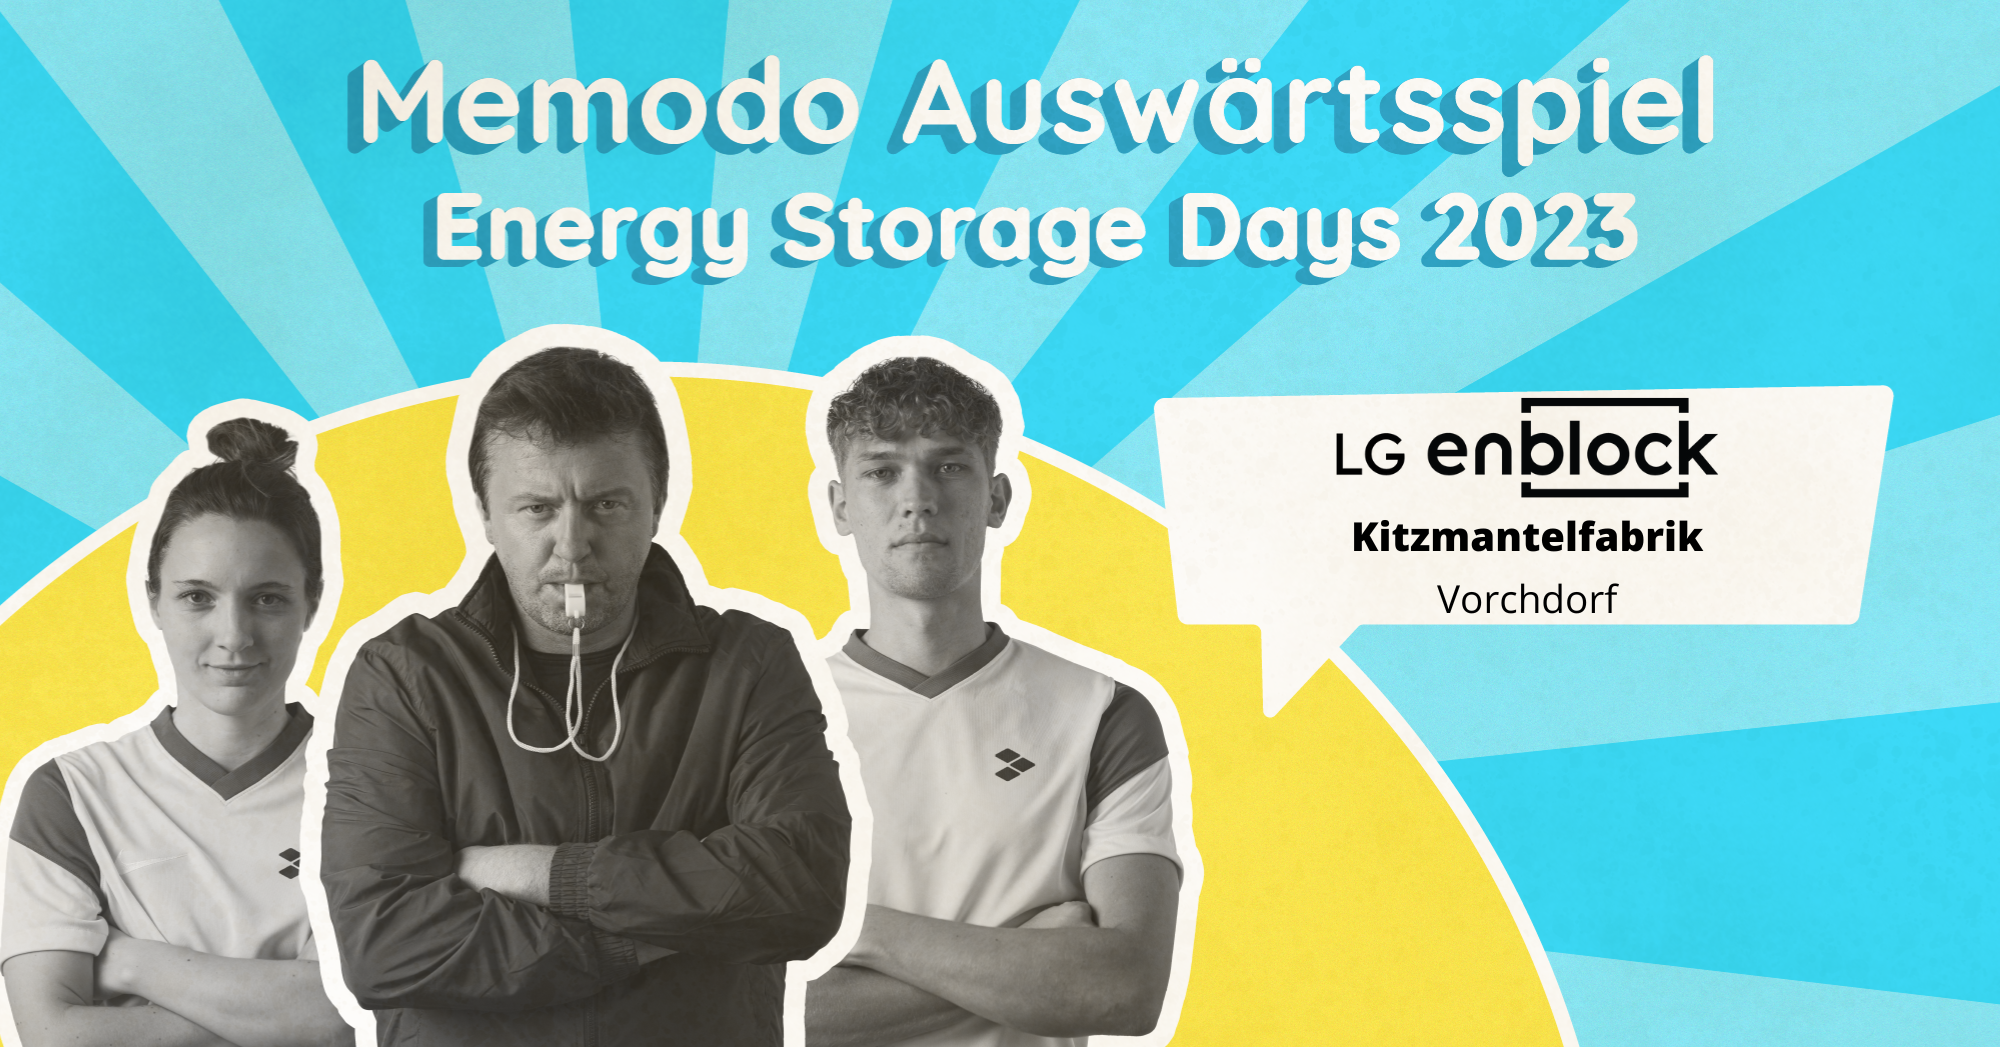 Memodo Energy Storage Days 2023 Vorchdorf